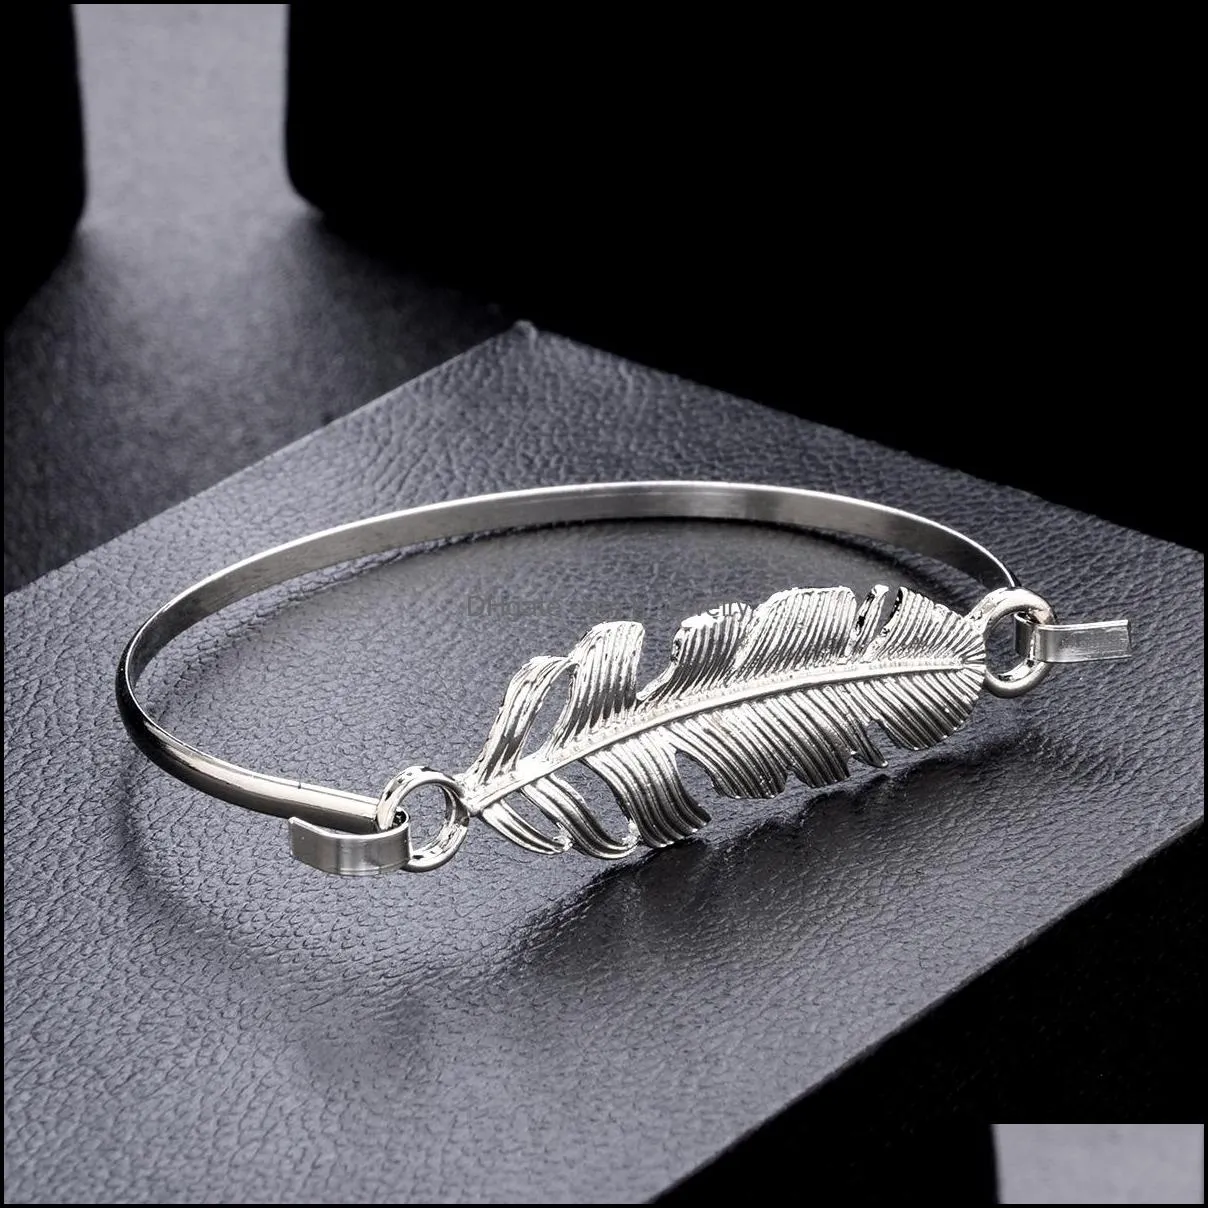 bracelets sets vintage big metal women letters bebrave keep gping bangles jewelry gift dreamcatcher bracelet set